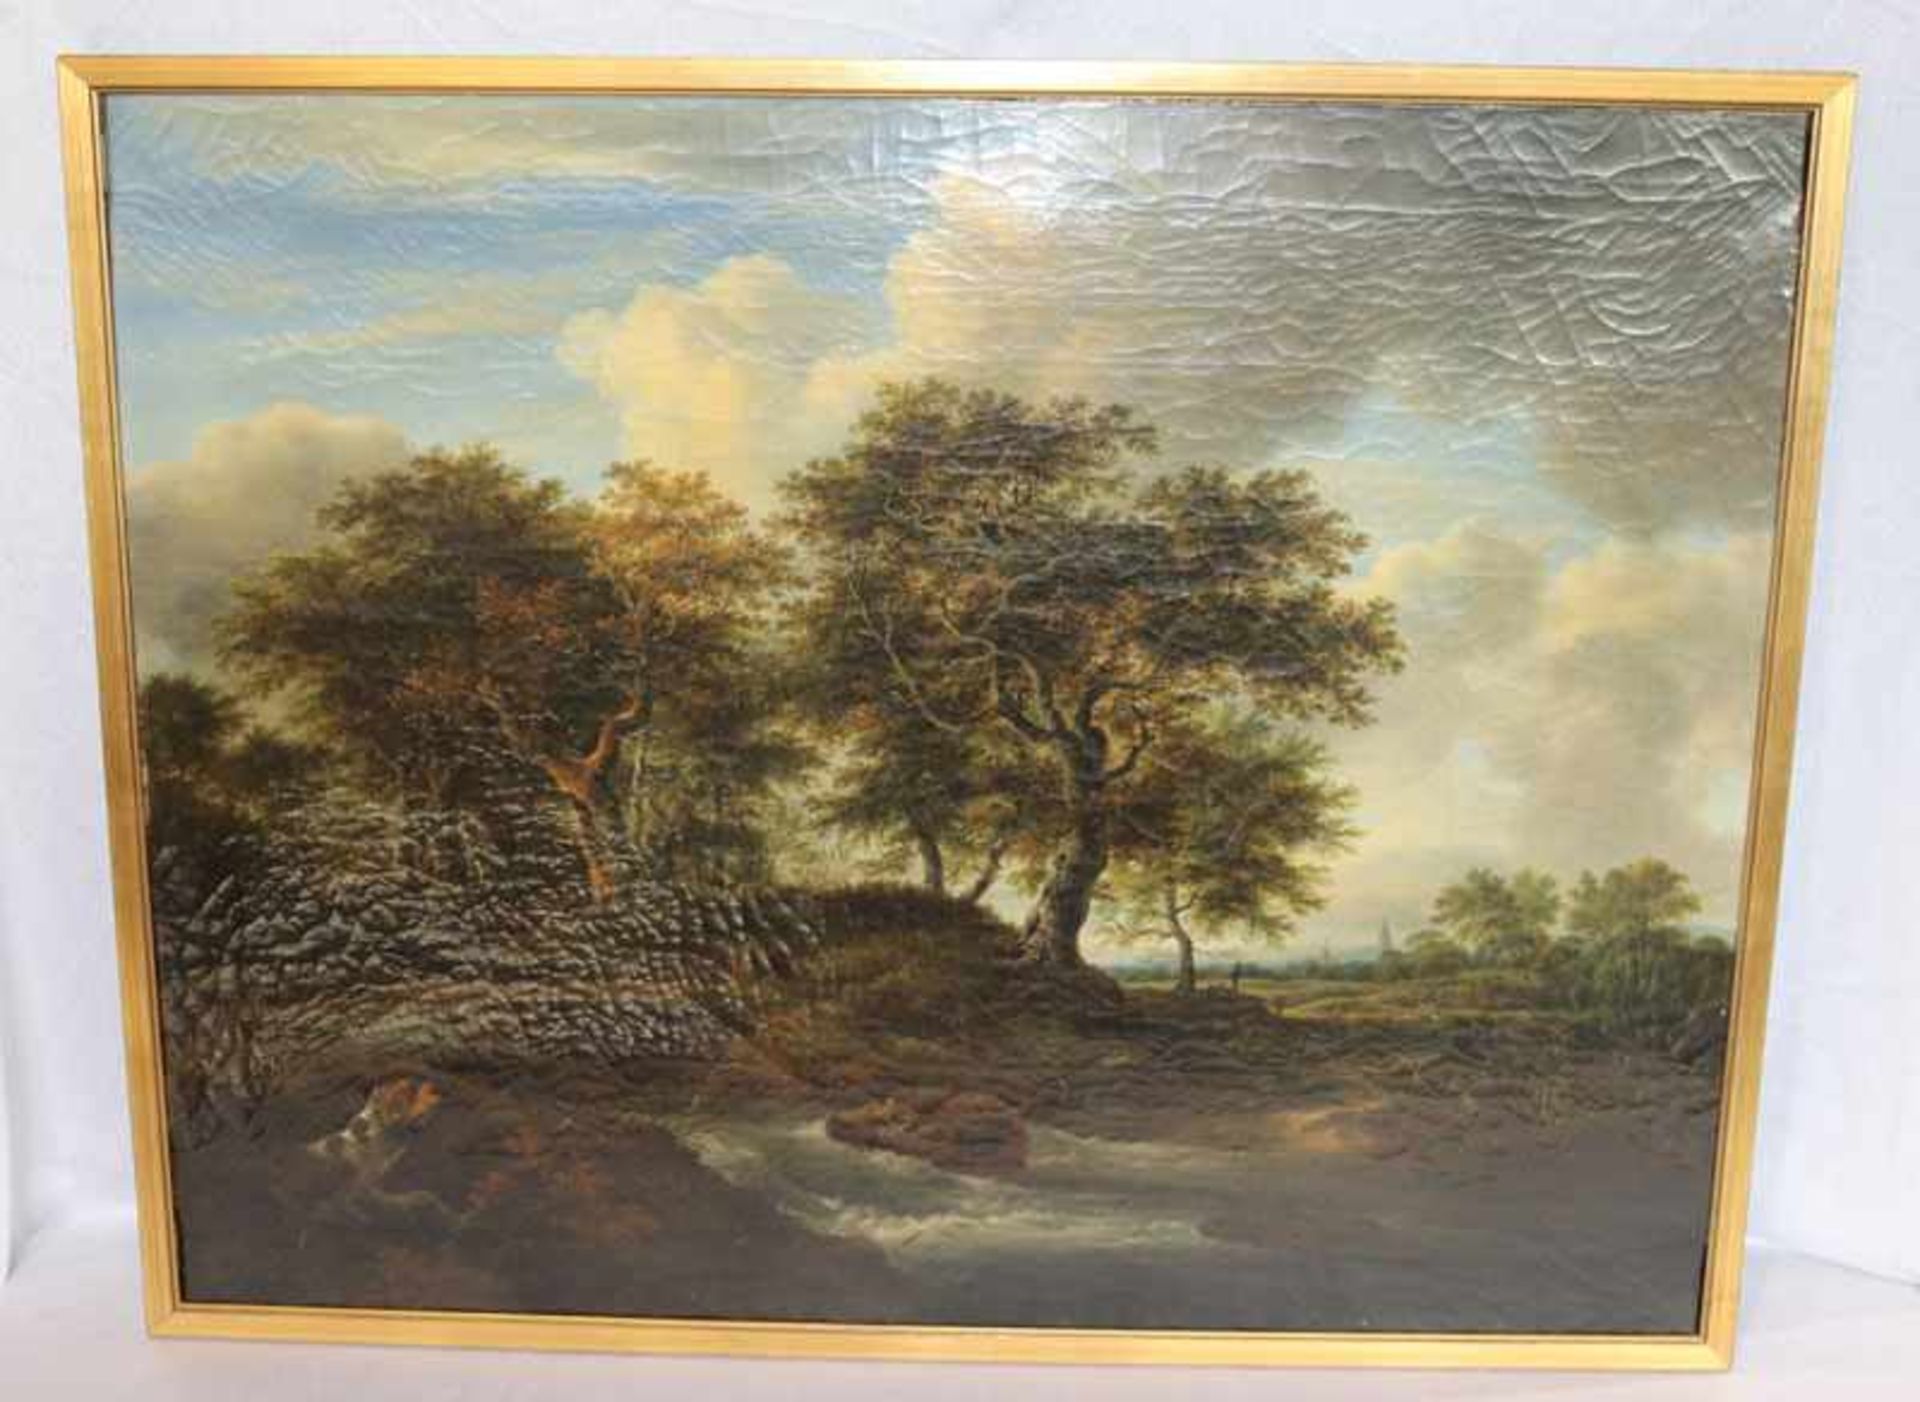 Gemälde ÖL/LW 'Landschafts-Szenerie mit Bachlauf', um 1800, Bildoberfläche mit Krakele, gerahmt,